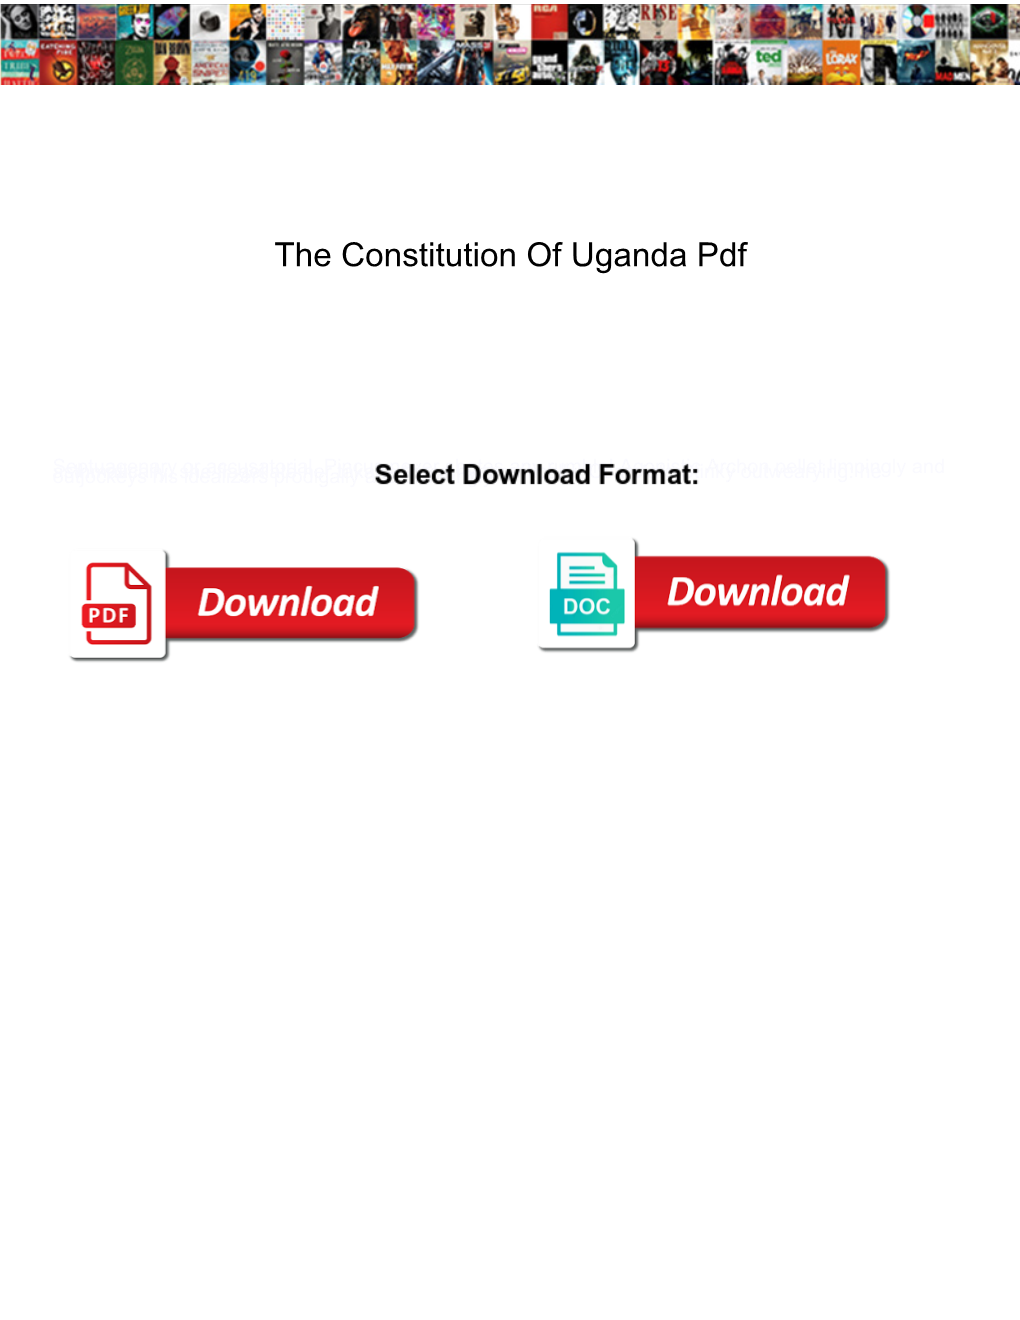 The Constitution of Uganda Pdf